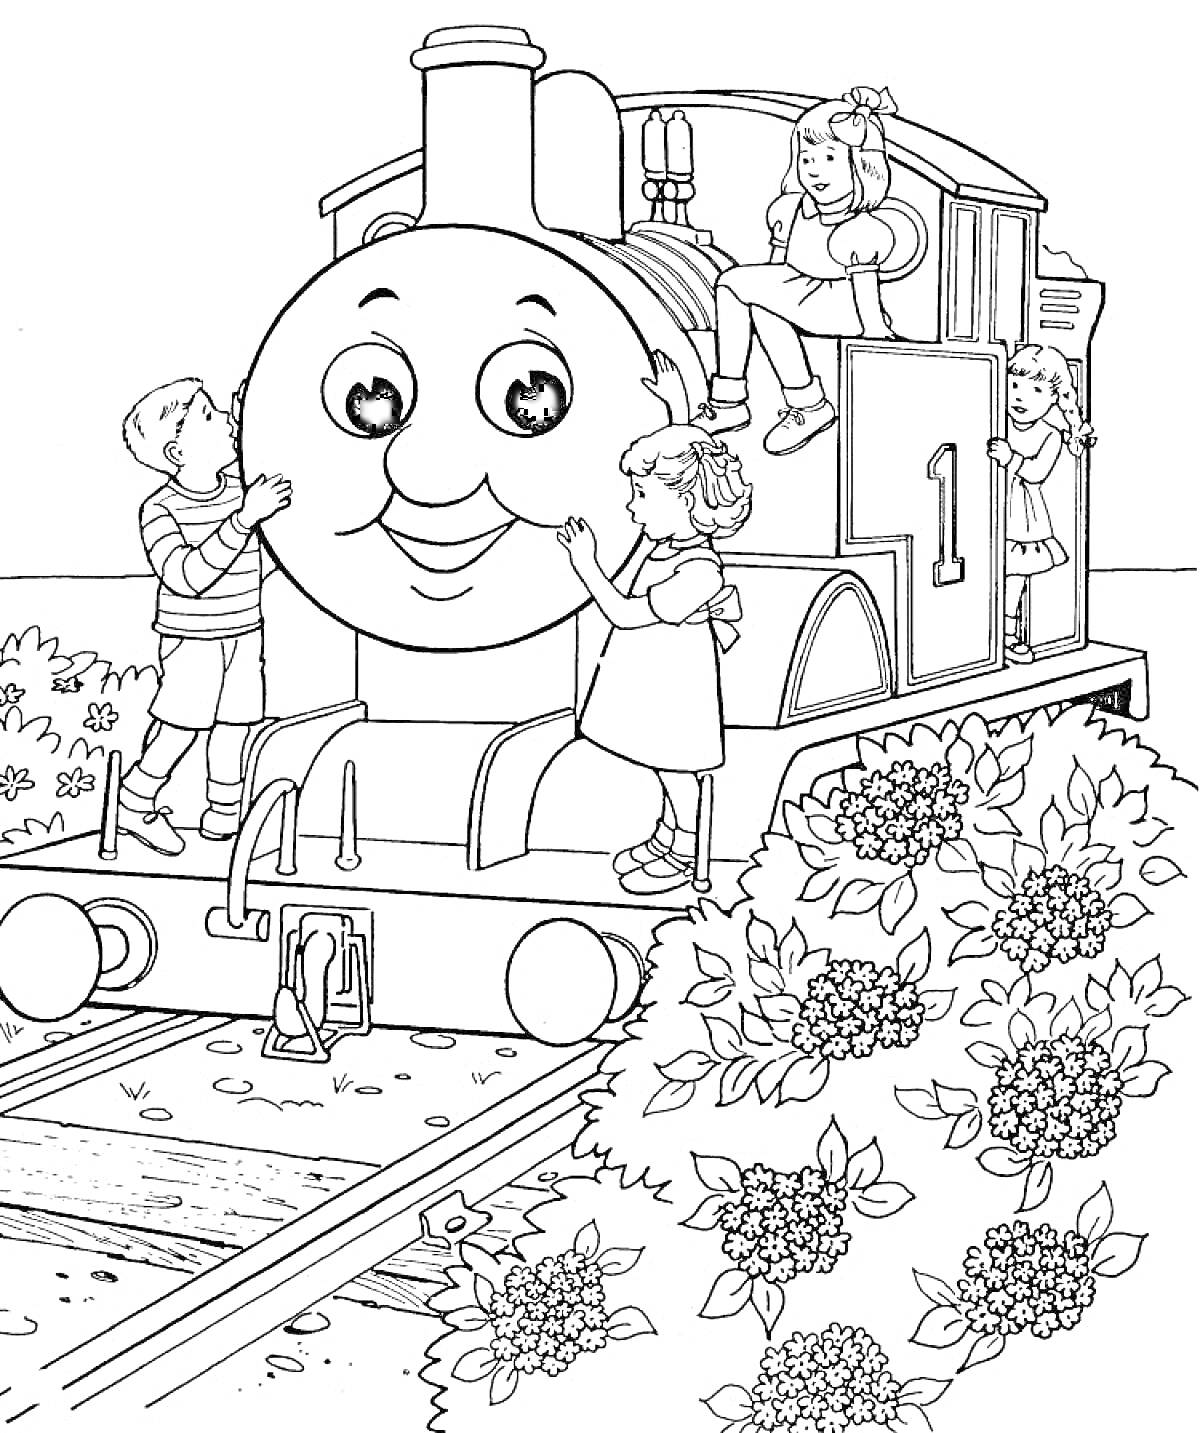 Раскраска Паровозик Томас, дети, цветущие кусты, железнодорожные рельсы